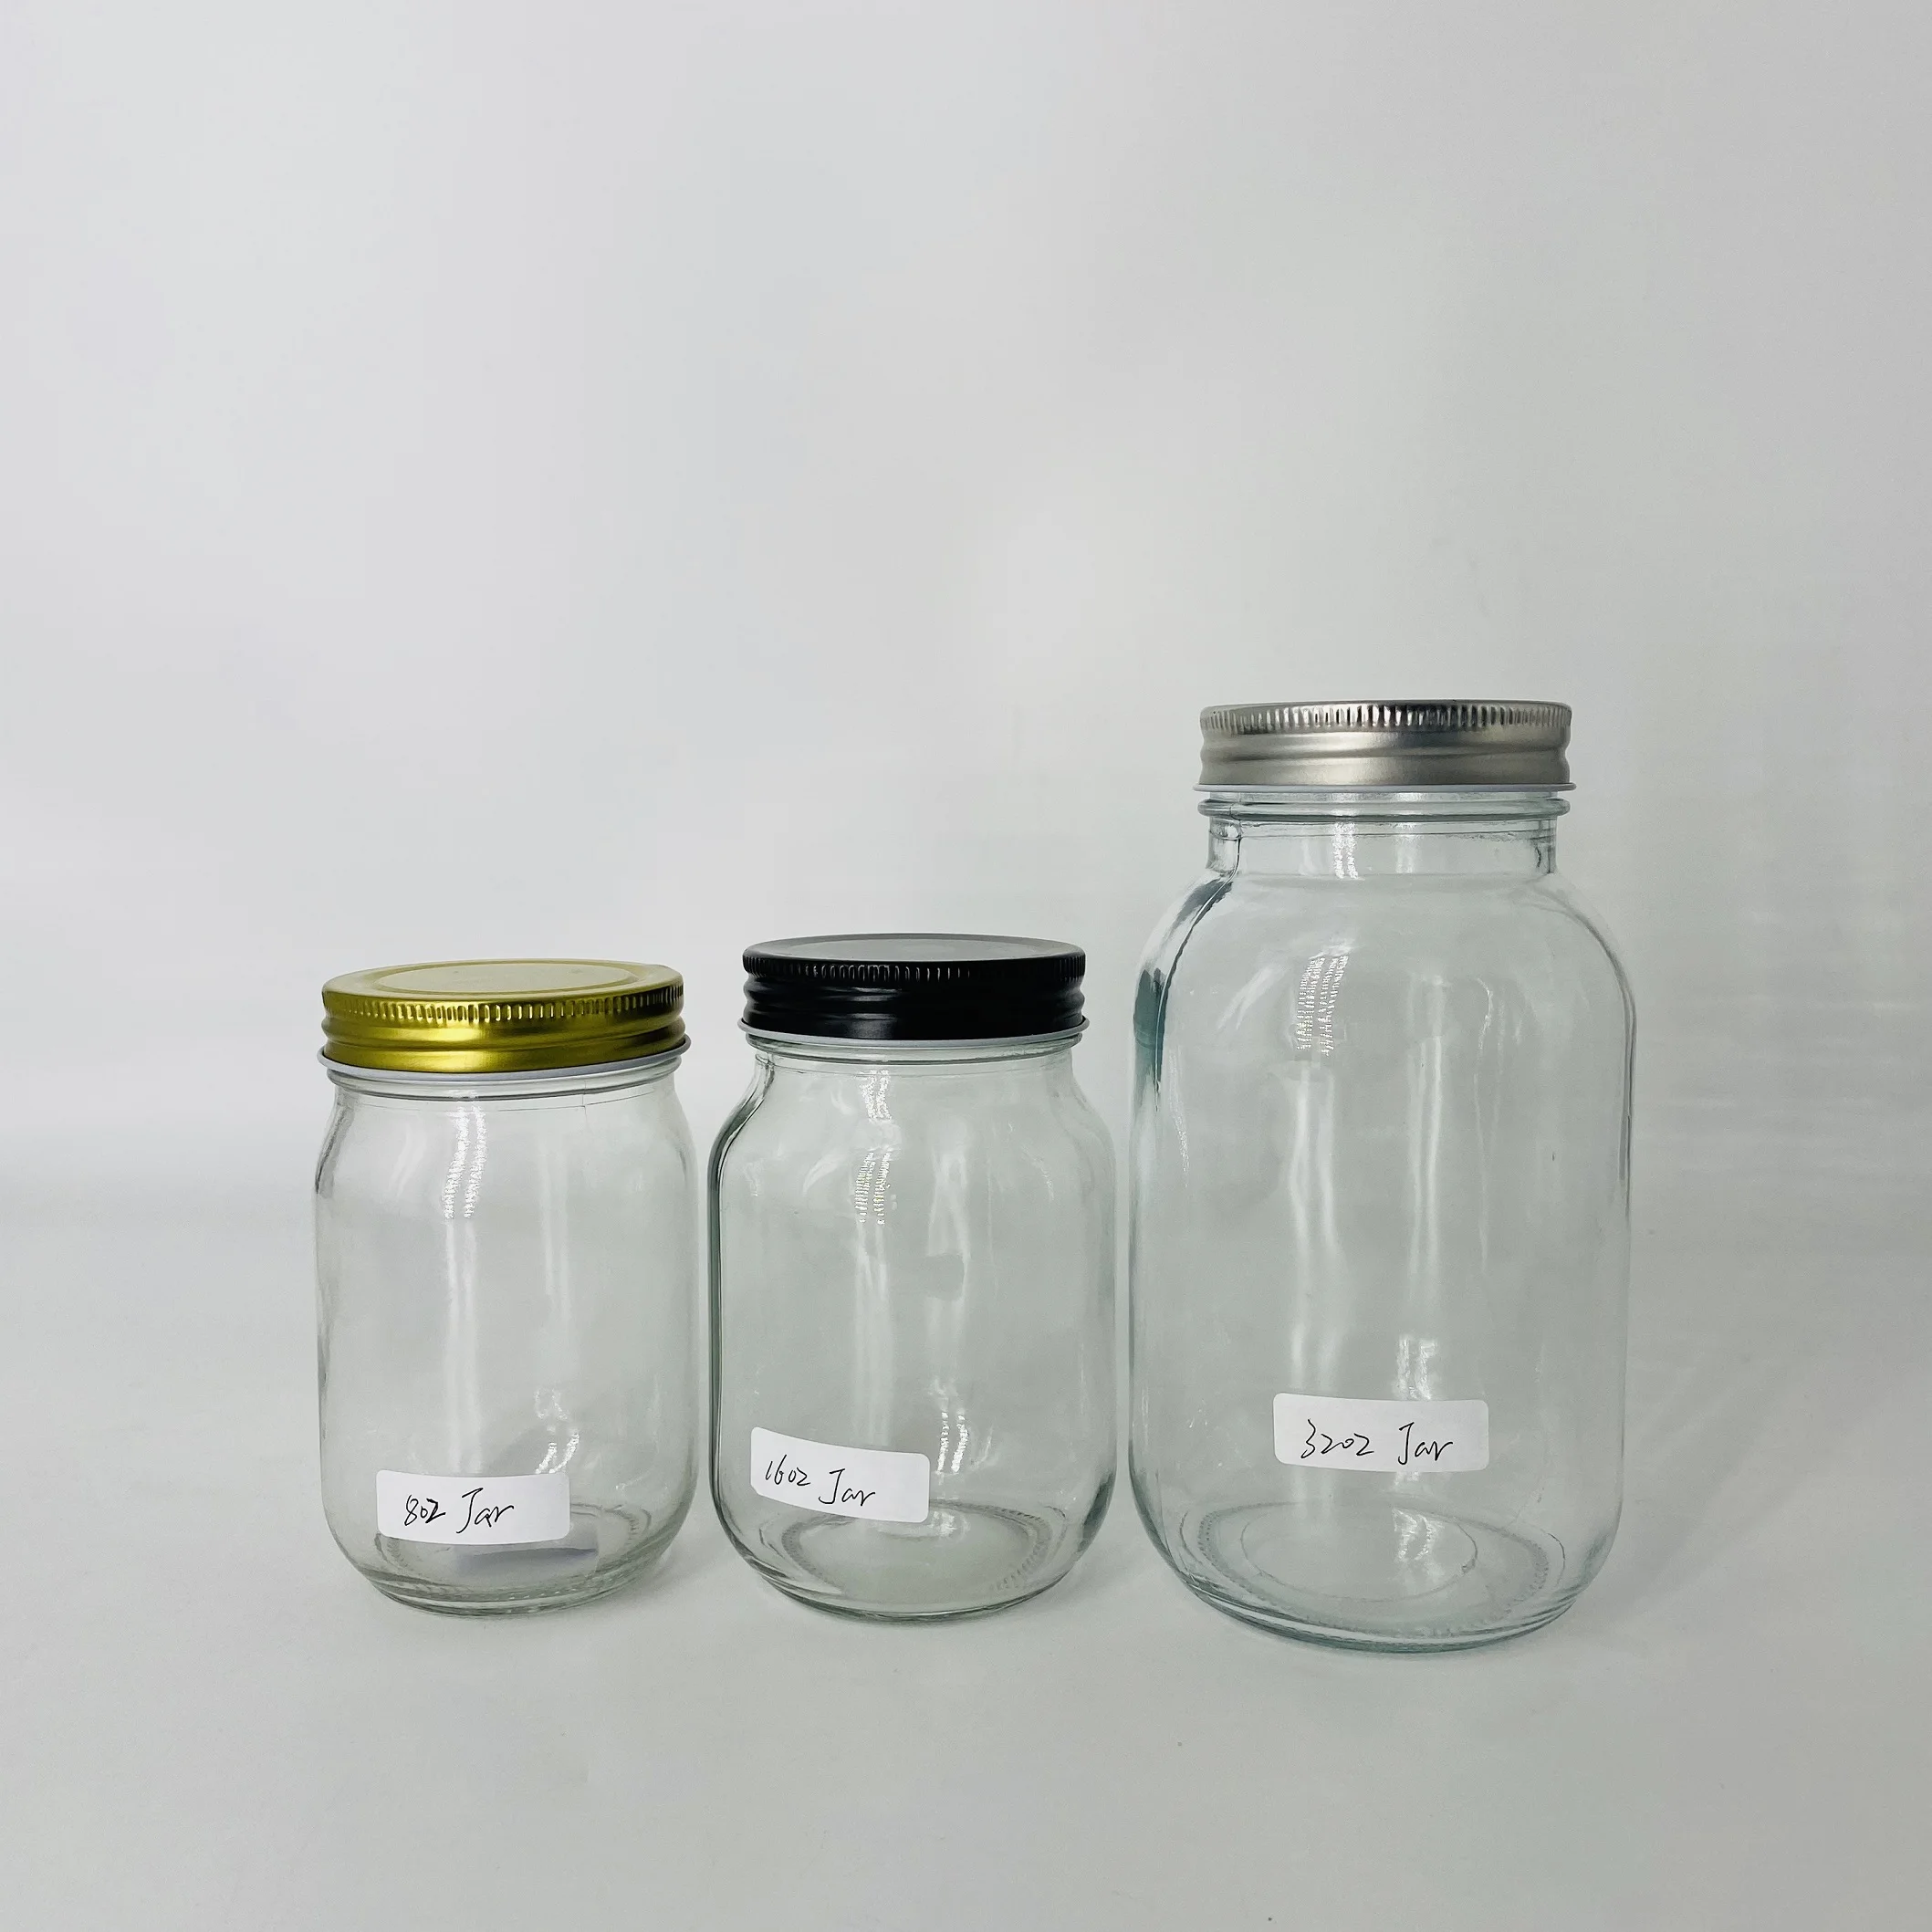 
4oz 8oz 12oz 16oz 32oz width mouth glass jelly jar Hermetic jam mason jar with lids and bands 